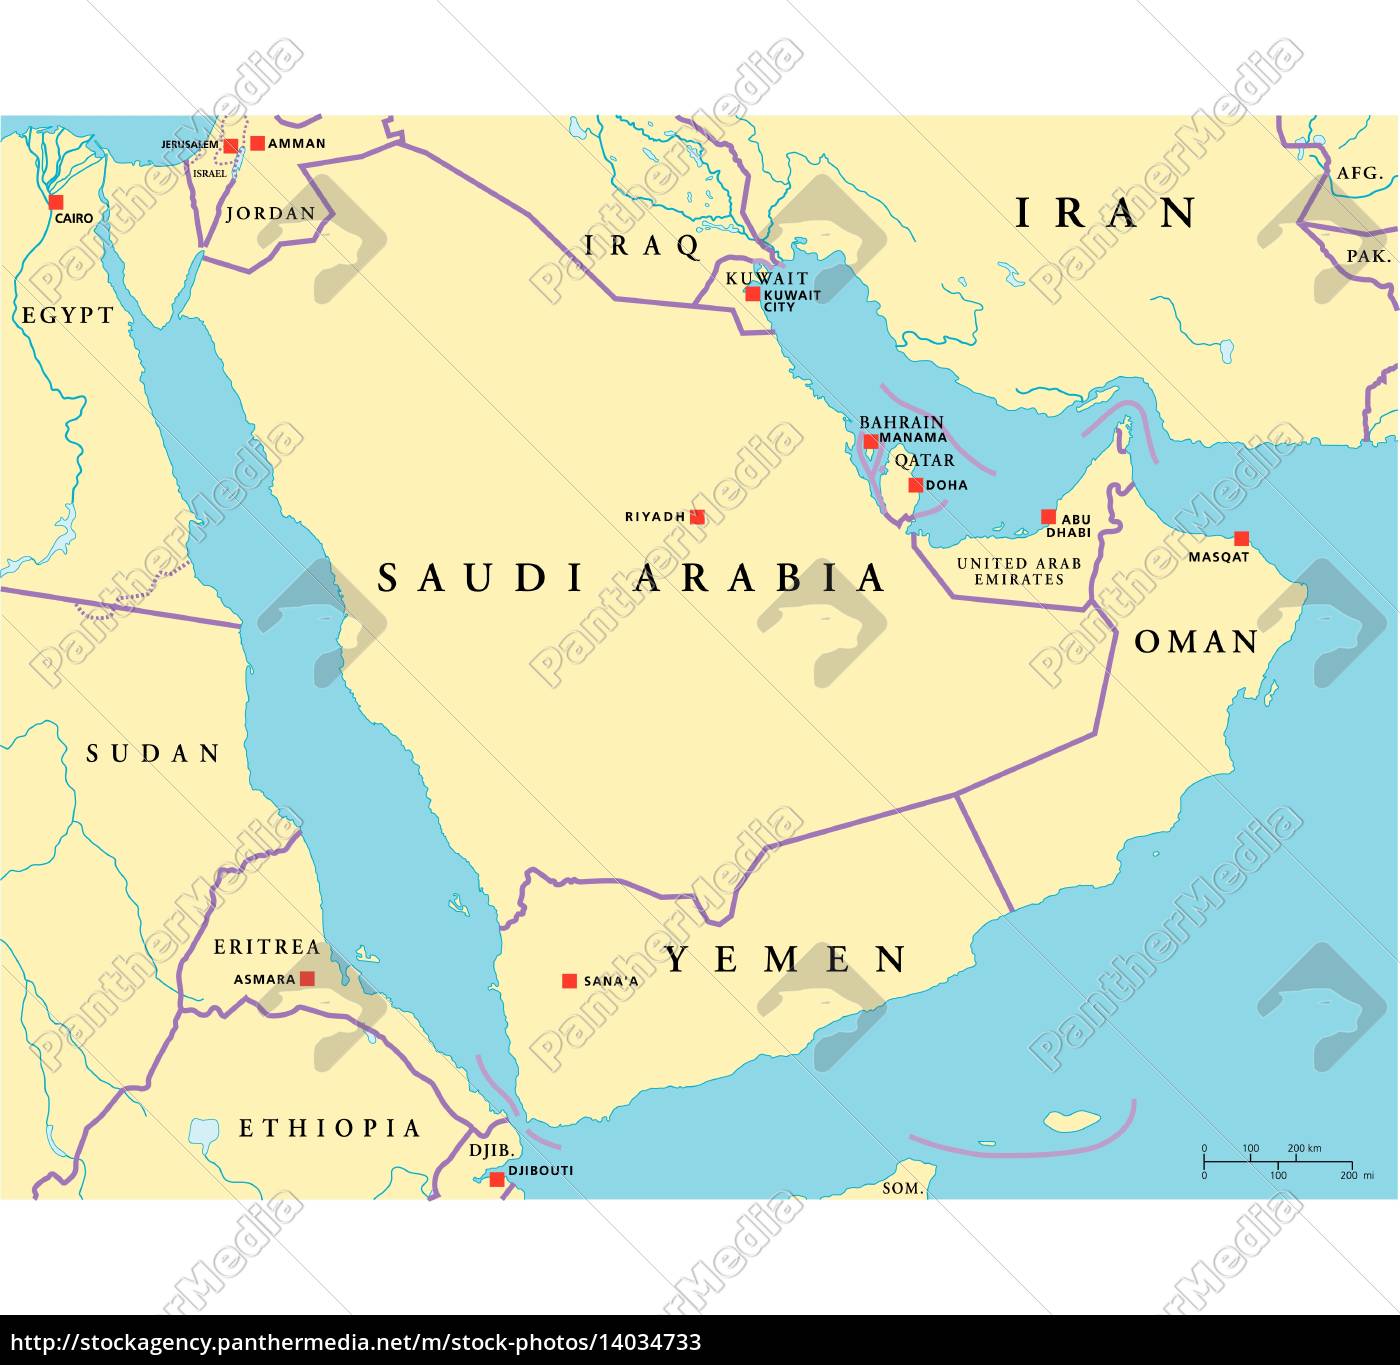 Arabian Peninsula Political Map Arabian Peninsula Political Map   Stock Photo   #14034733 